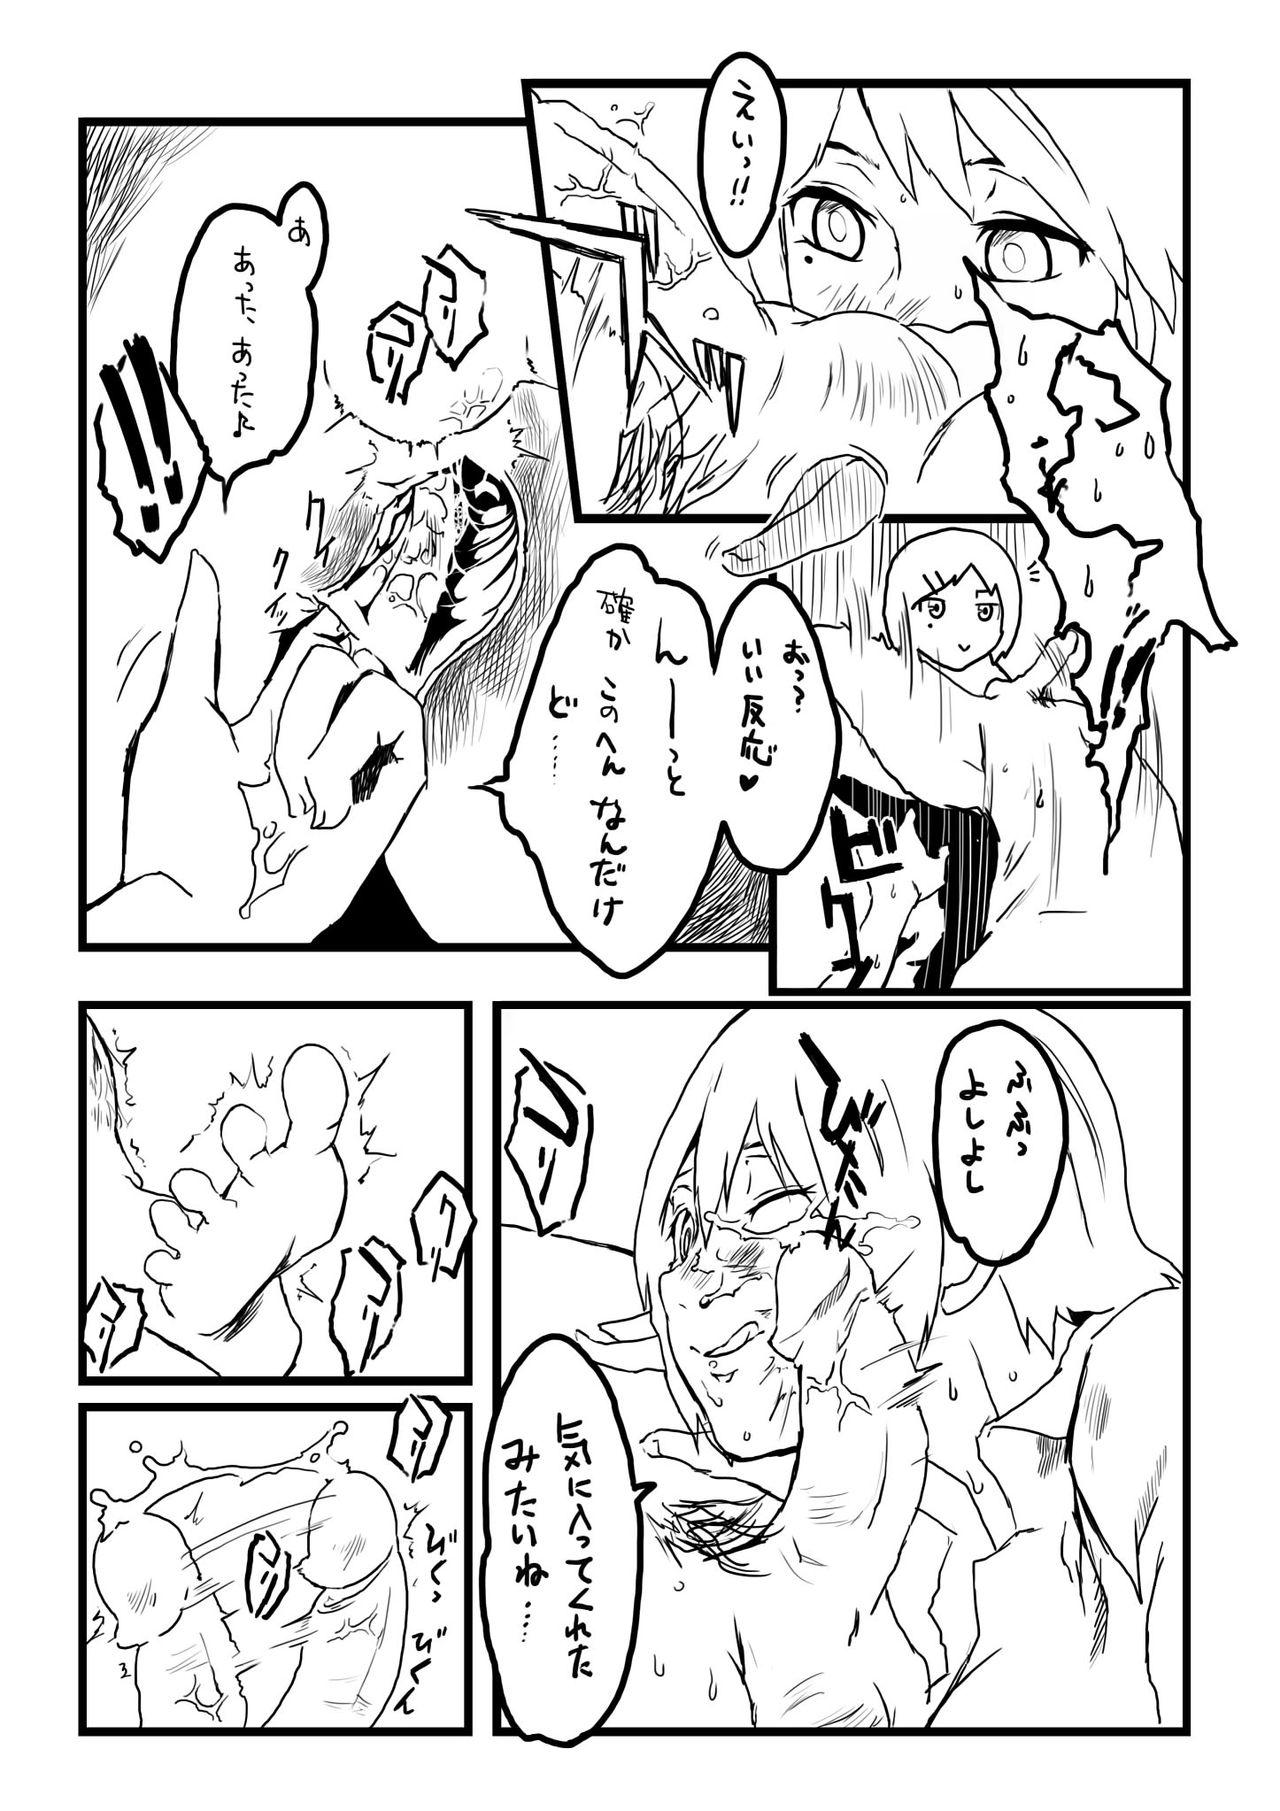 Fellatio Tamazeme to Zenritsusen Seme no Ero Manga - Original Roludo - Page 4